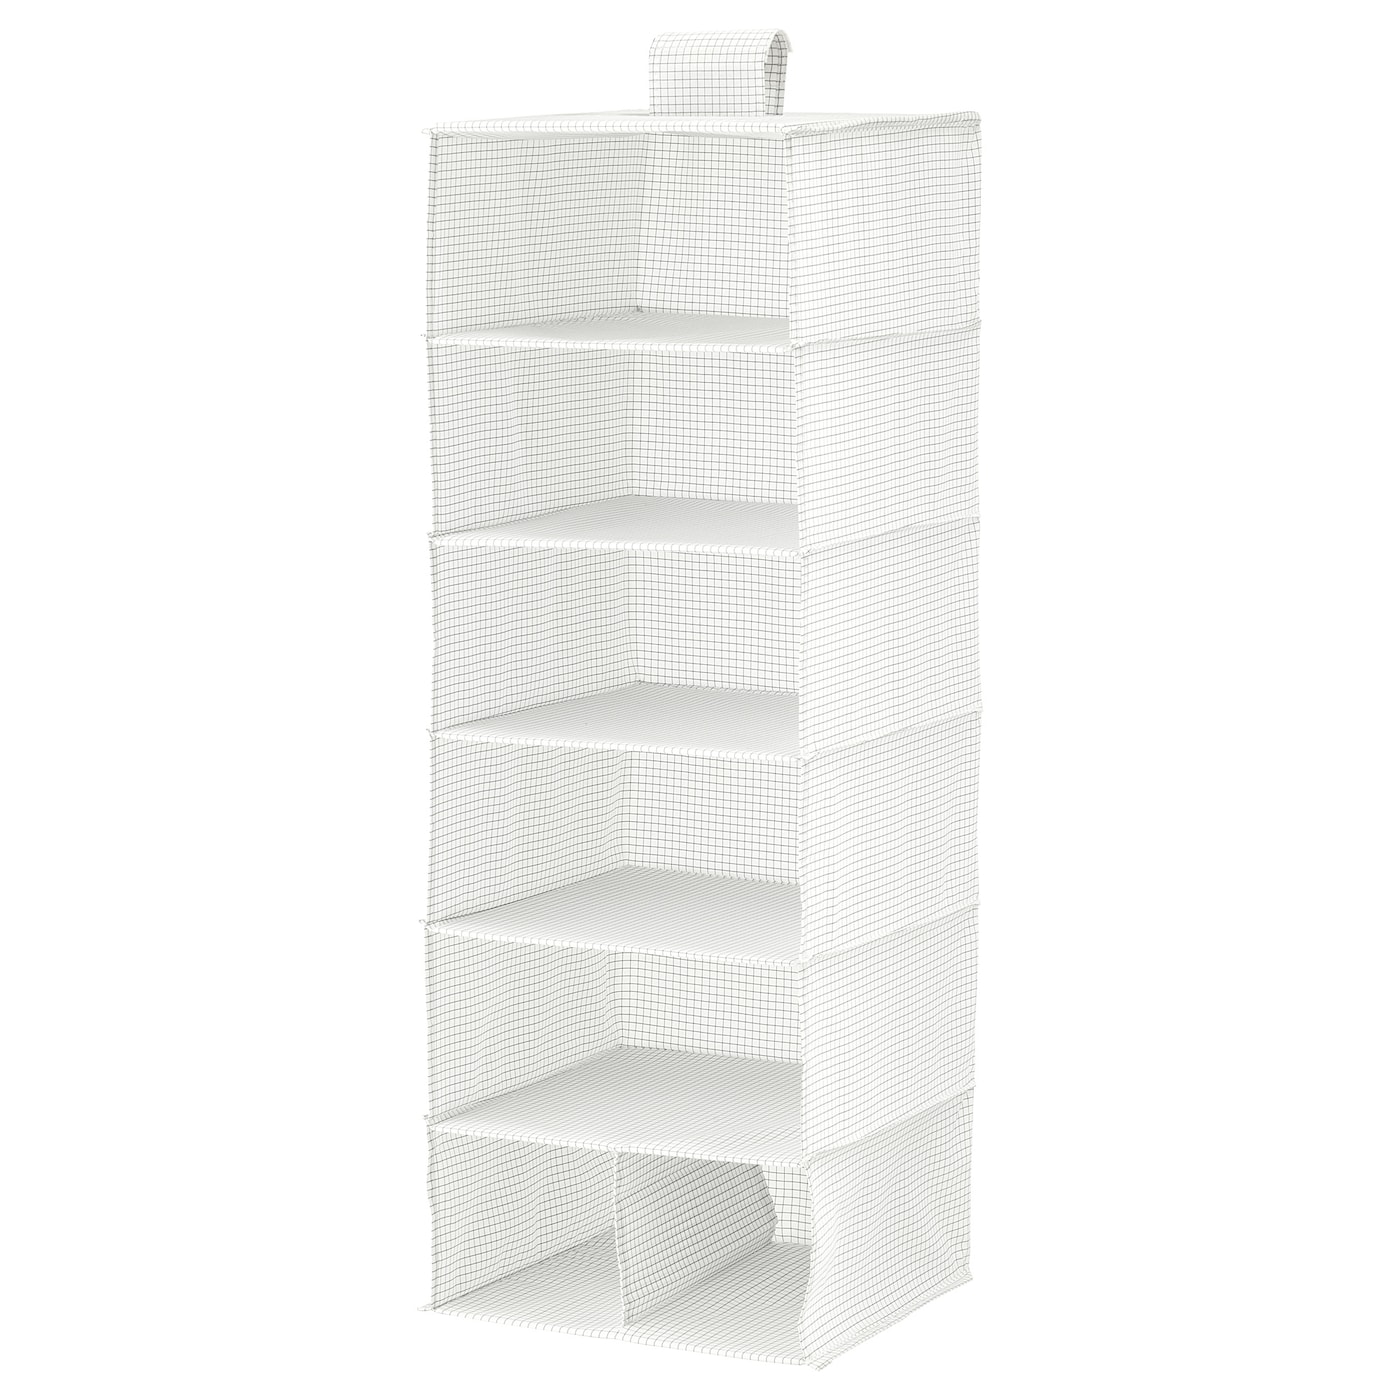 STUK СТУК Модуль для хранения/7 отделений, белый/серый, 30x30x90 см IKEA stuk стук органайзер белый 26x20x6 см ikea